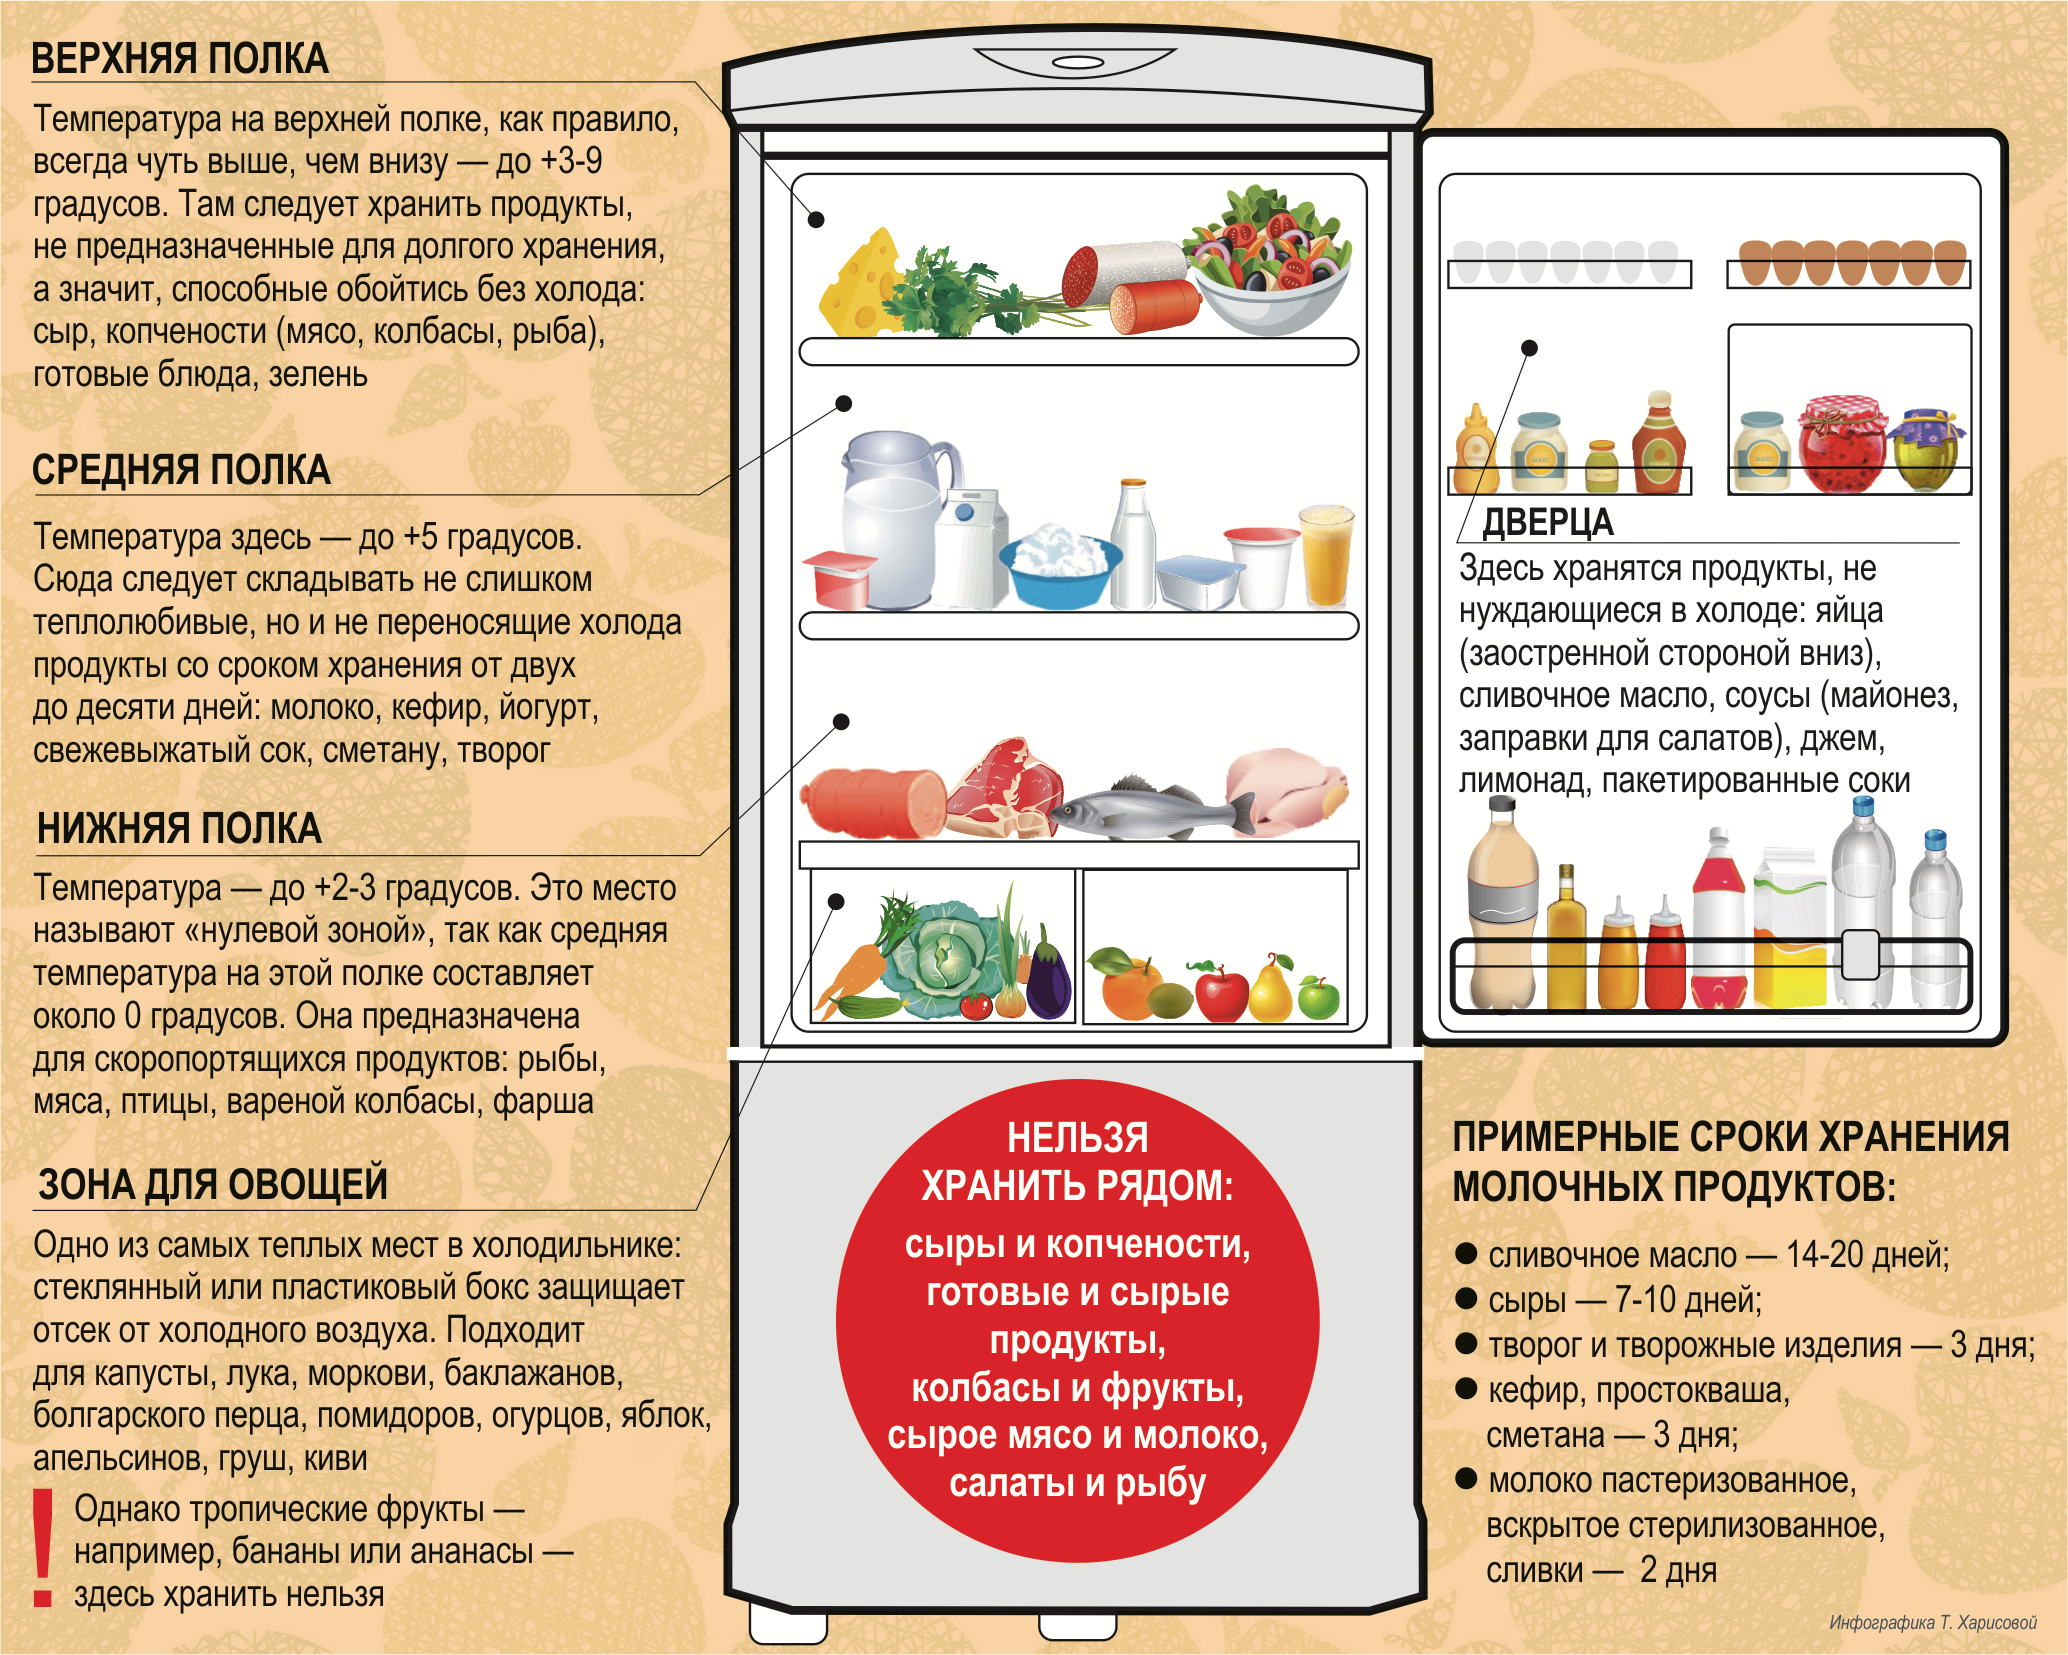 Как хранить чеснок в холодильнике в домашних условиях: в банке, пакете